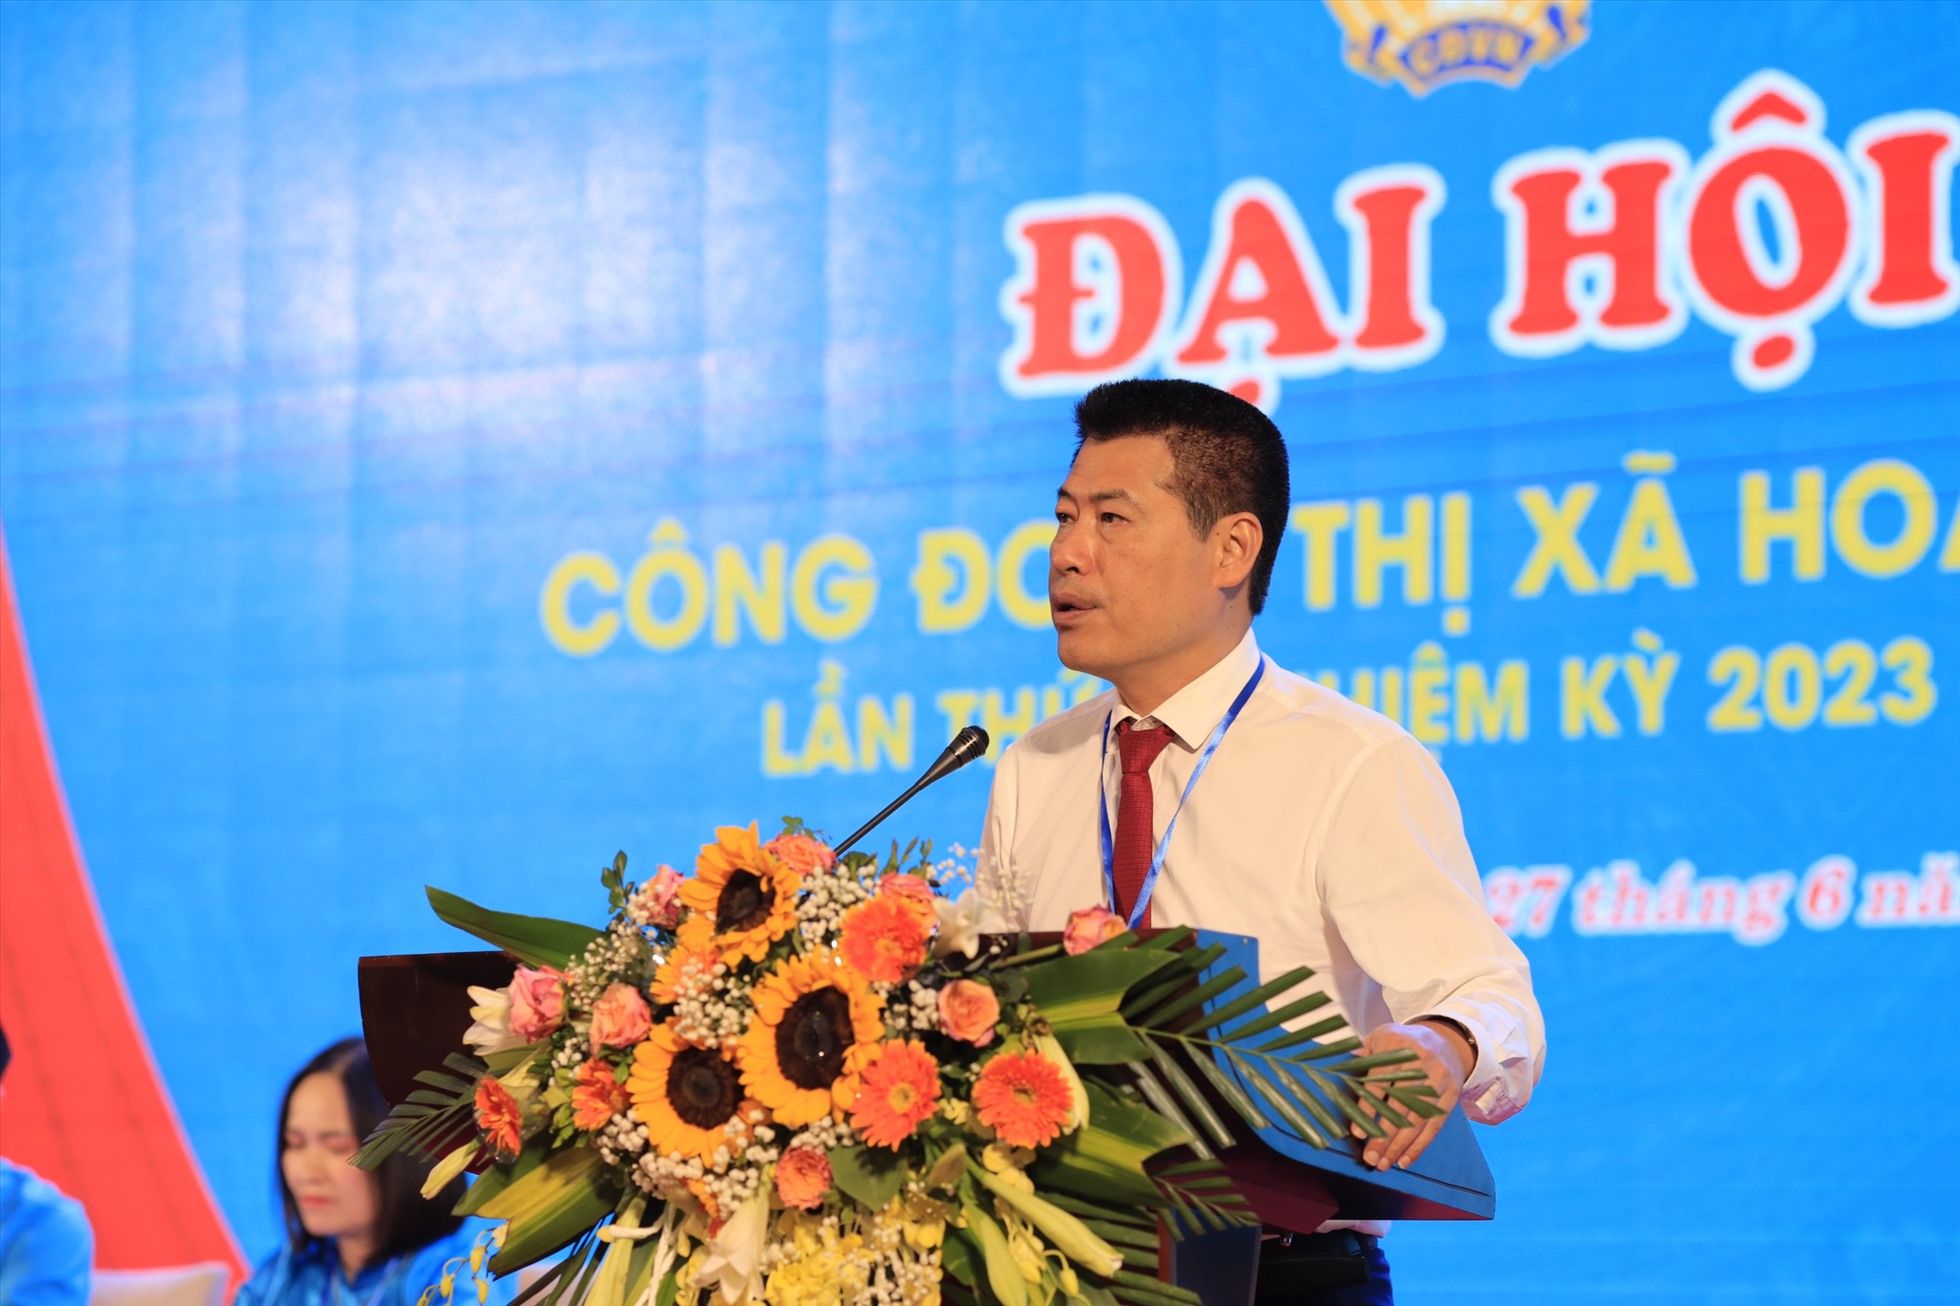 Ông Lê Trường Giang – Bí thư thị ủy Hoàng Mai phát biểu chỉ đạo đại hội. Ảnh: Vân Nam